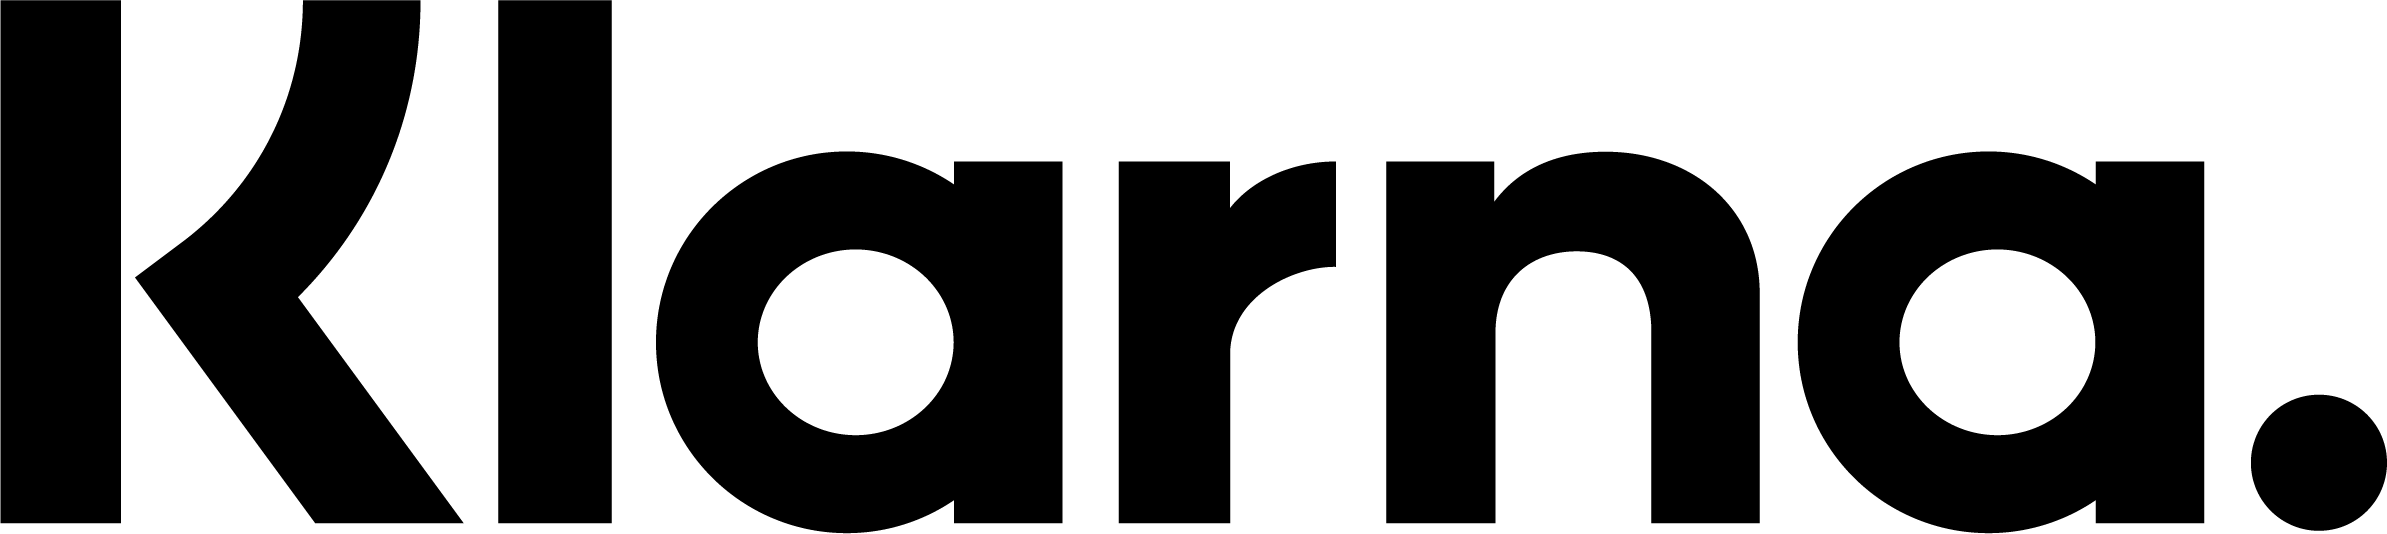 Klarna-logo-png-black.png